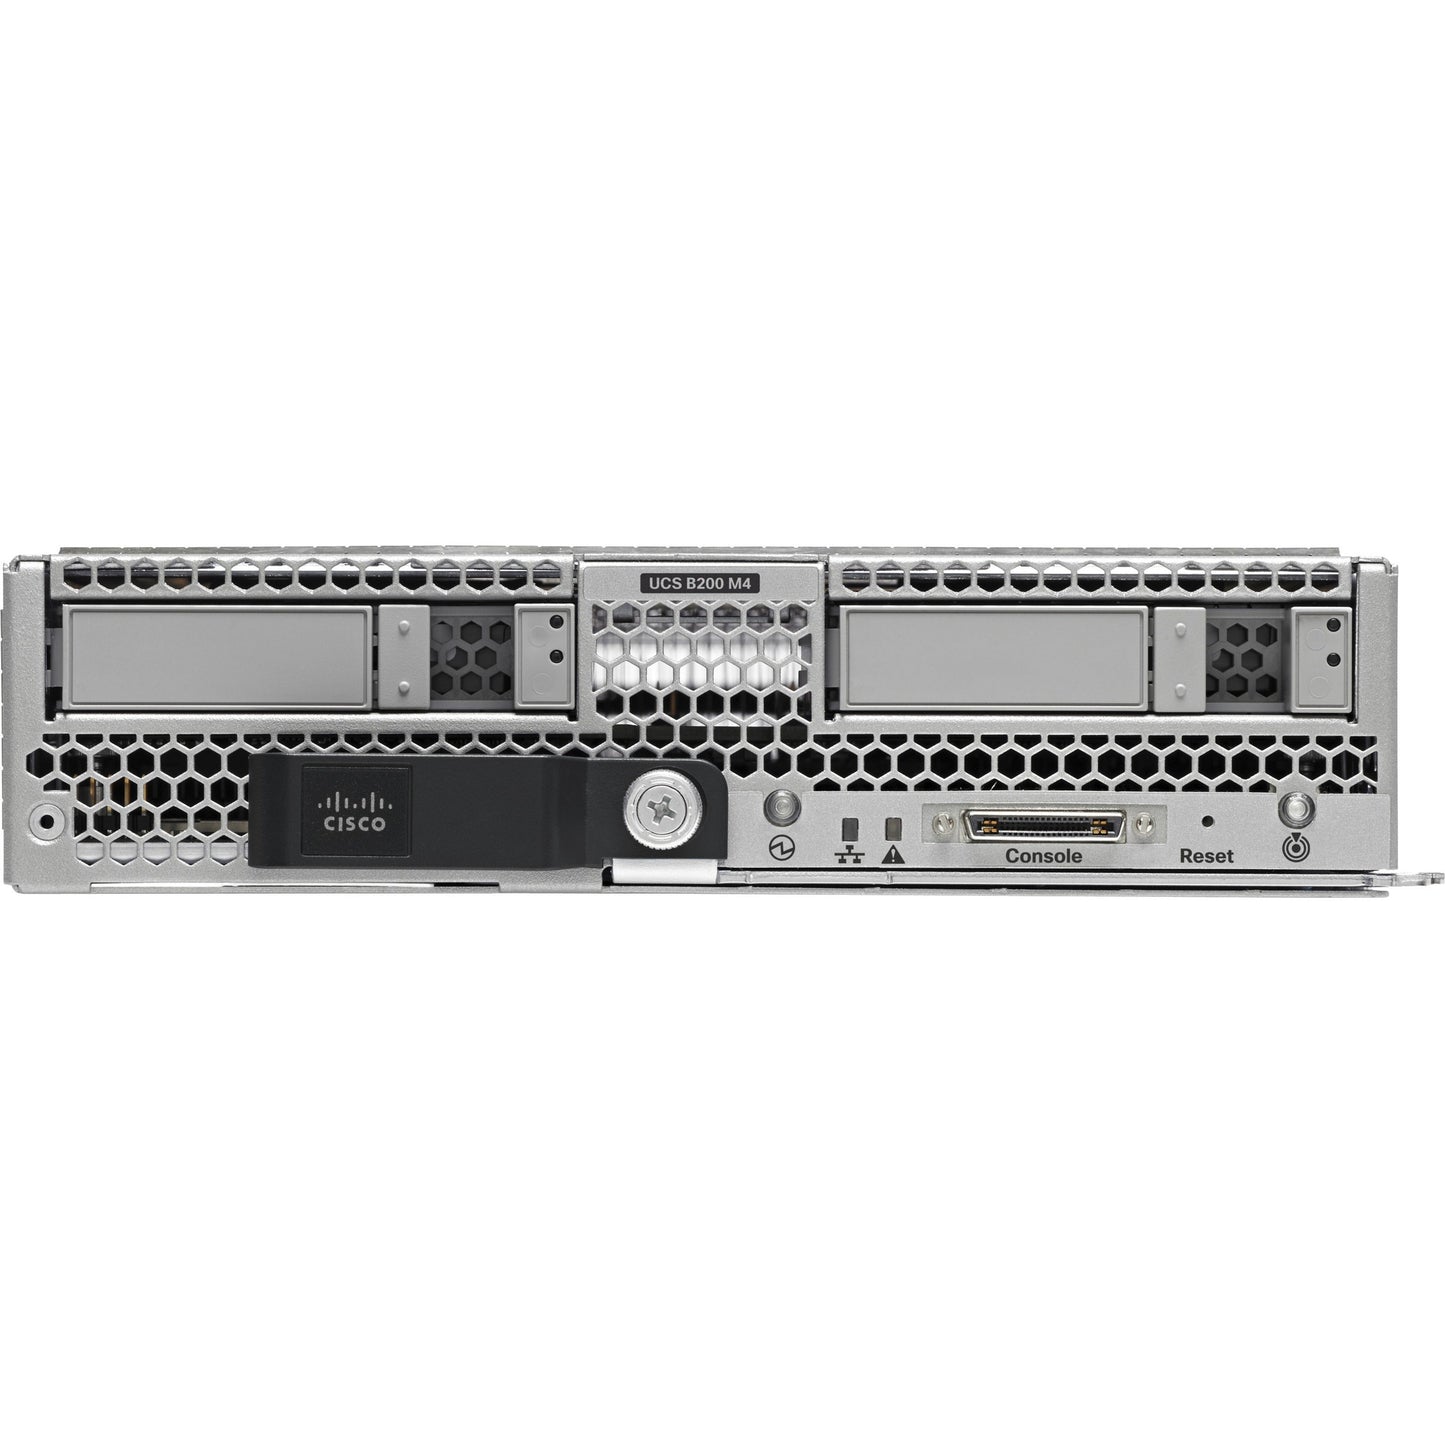 Cisco B200 M4 Blade Server - 2 x Intel Xeon E5-2660 v3 2.60 GHz - 256 GB RAM - Serial Attached SCSI (SAS) Serial ATA Controller